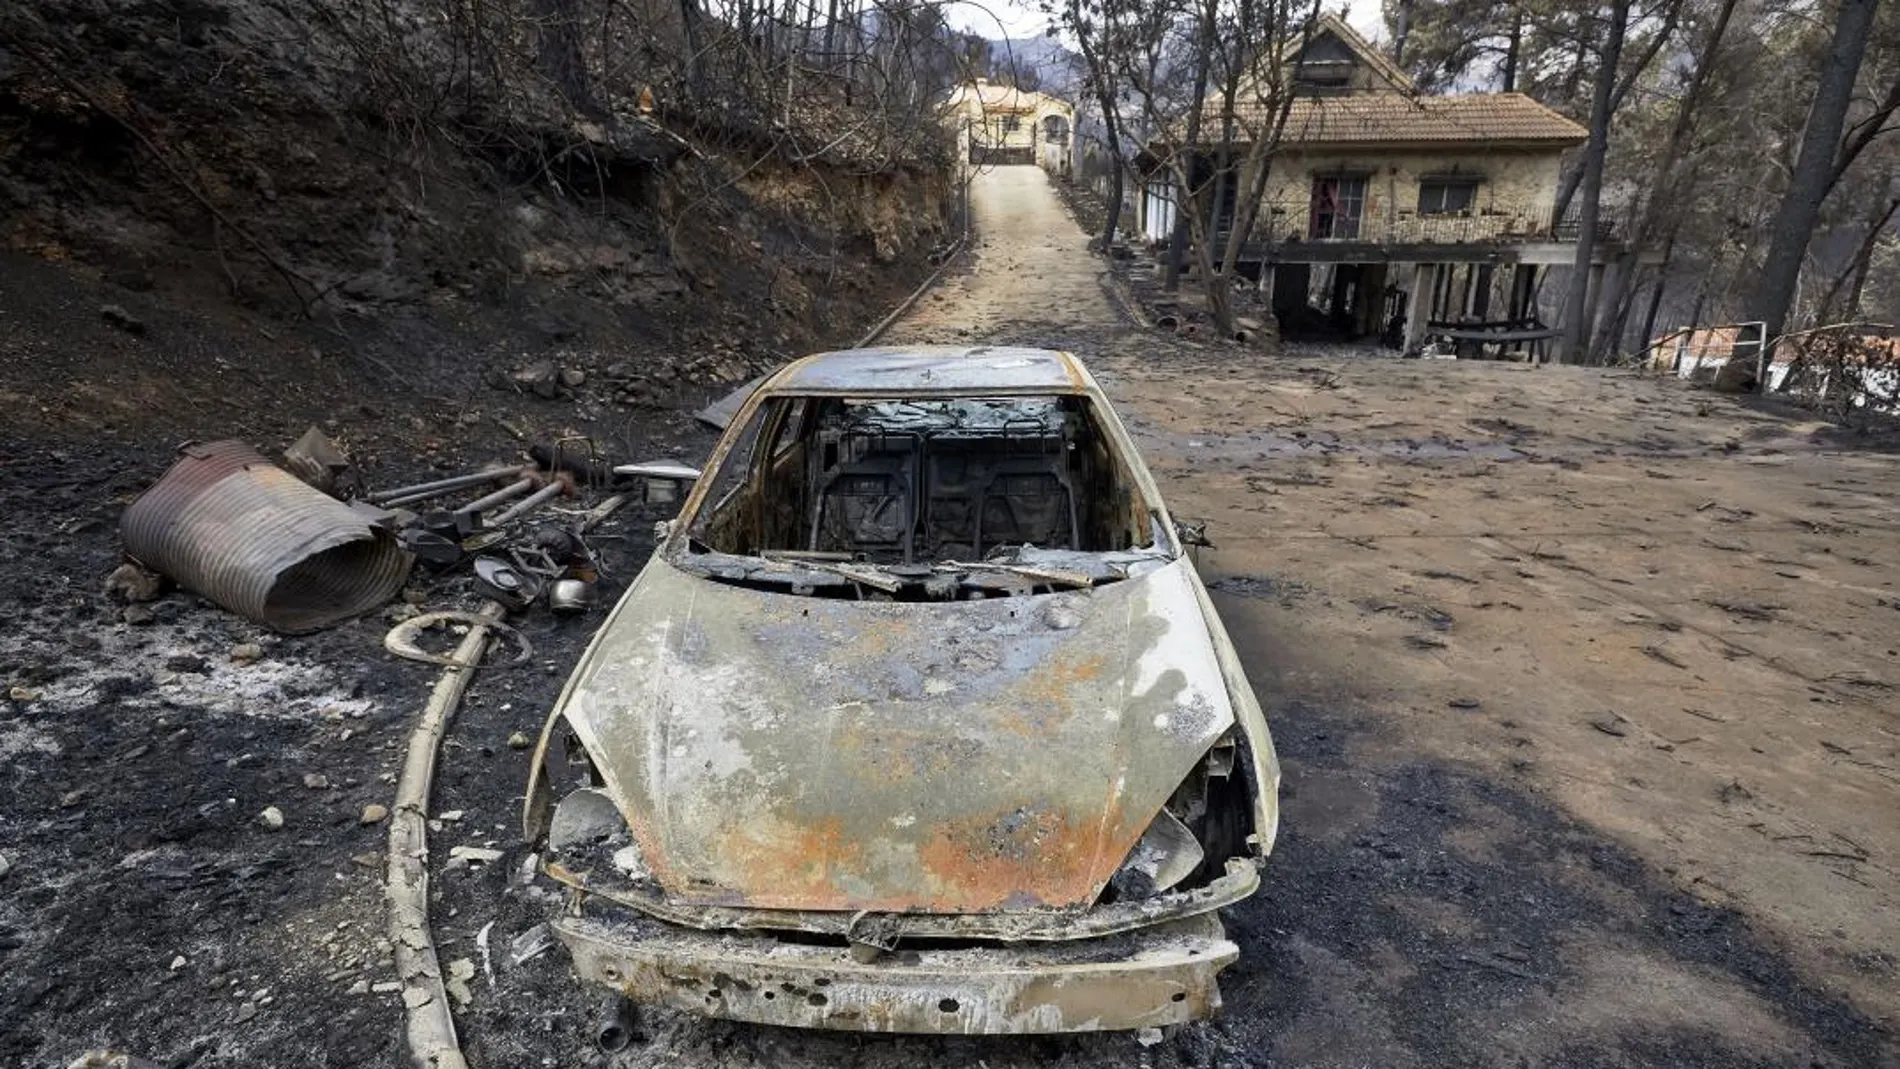 Vista de los daños causados en la urbanización Las Cumbres, que se vio rodeada por el incendio forestal de Llutxent - EFE